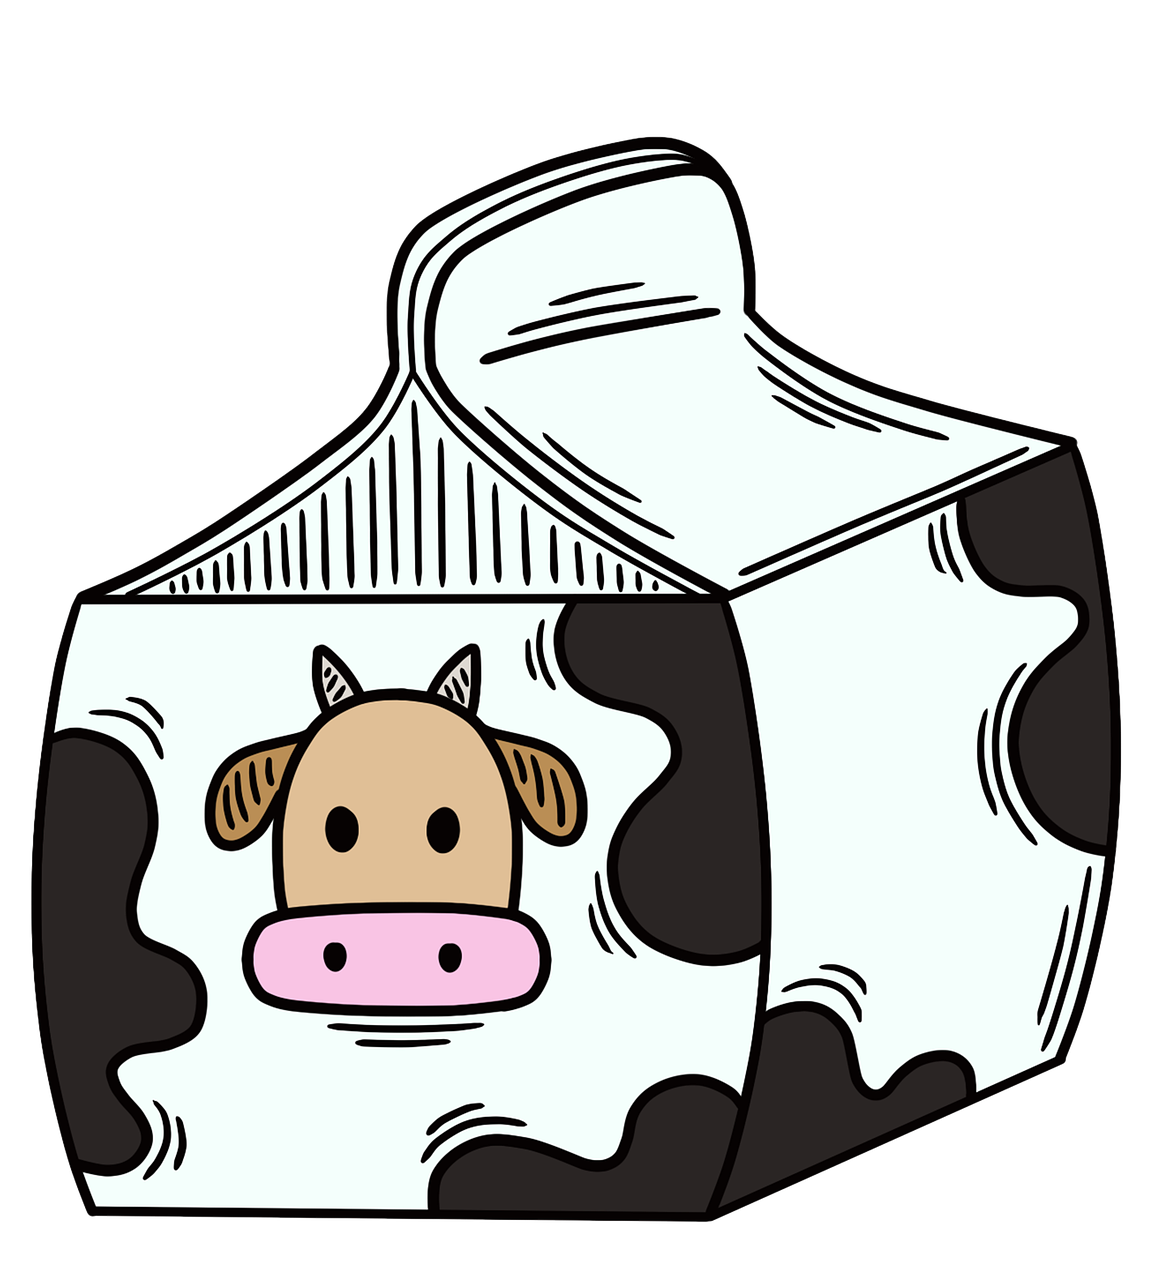 <b>牛奶预订小程序：一站式满足用户与商家双重需求</b>